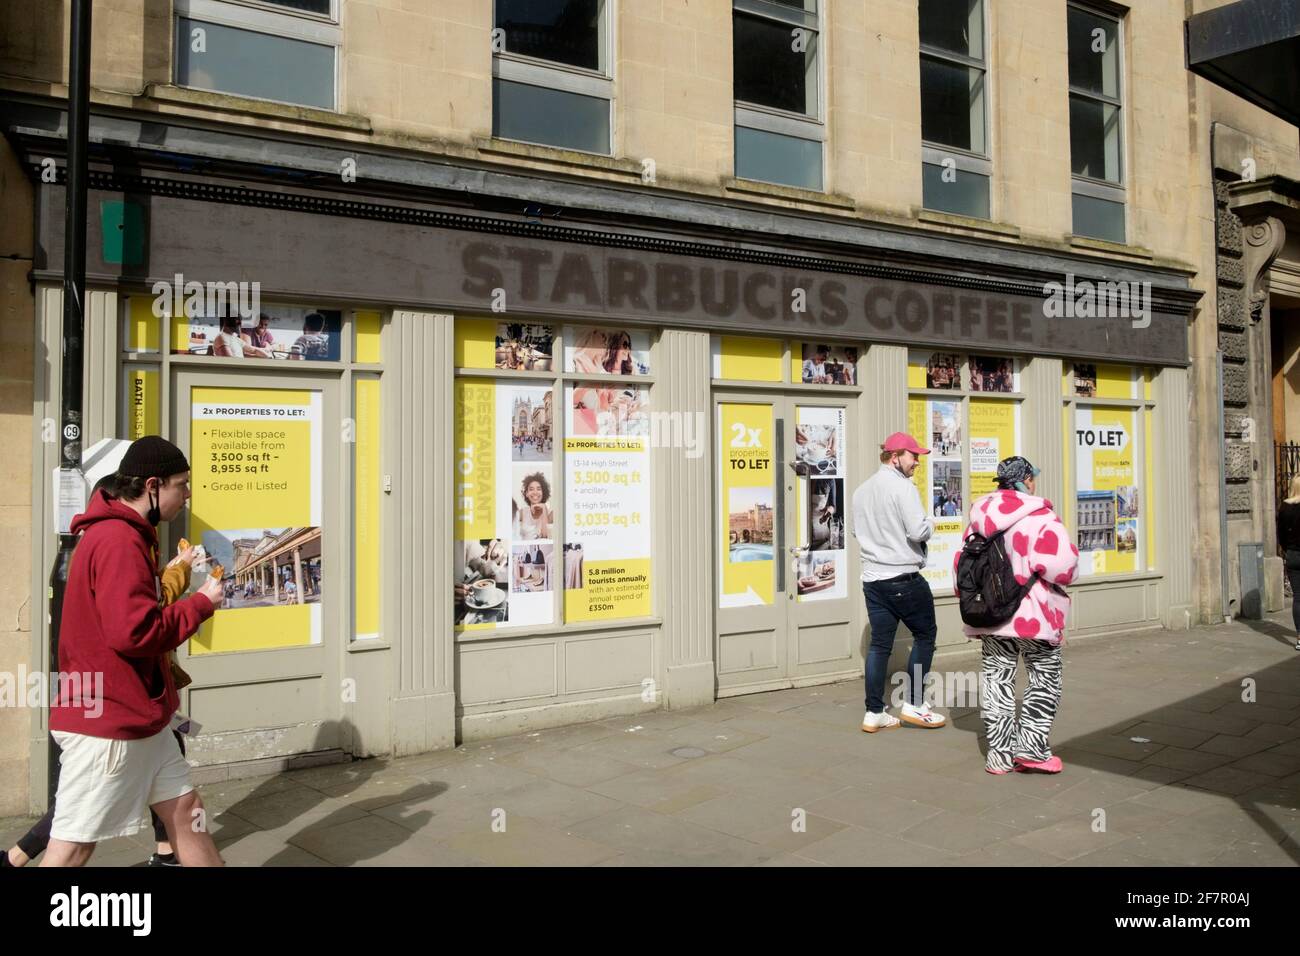 Fermeture des magasins de la ville de Bath somerset au Royaume-Uni. Le Starbucks a fermé avant le covid. Banque D'Images